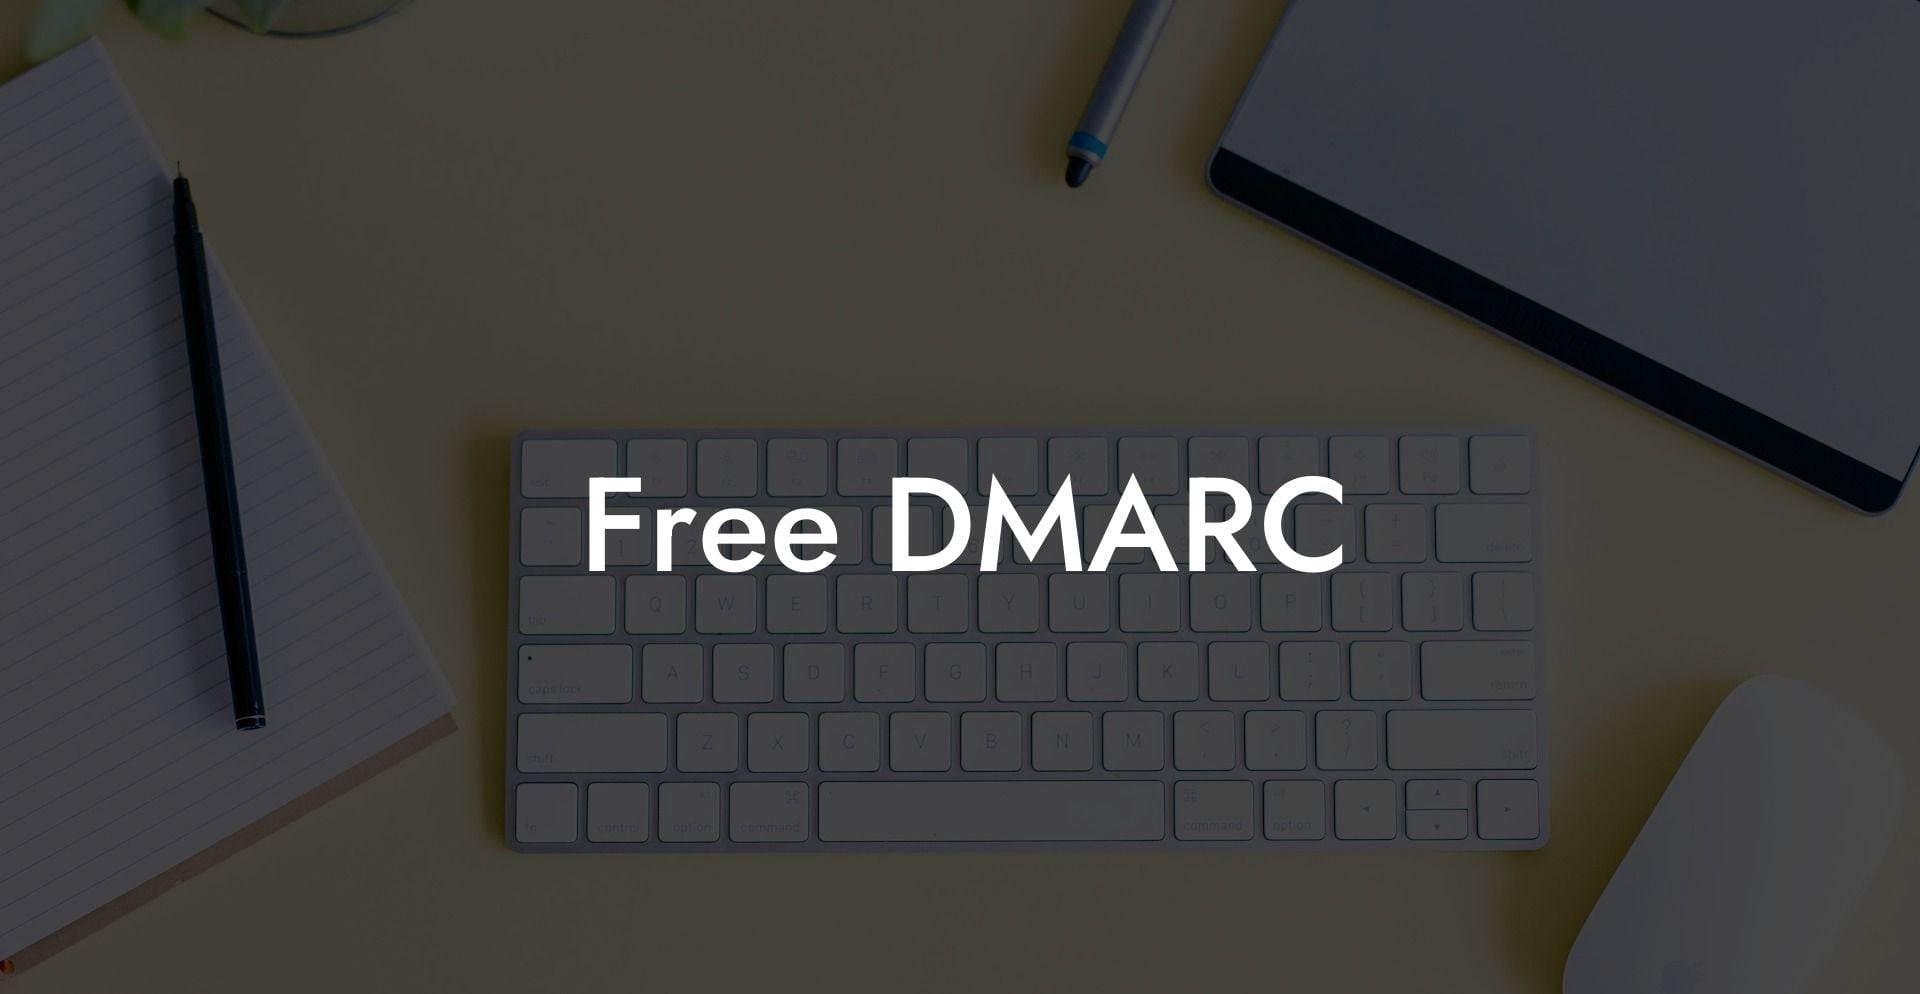 Free DMARC